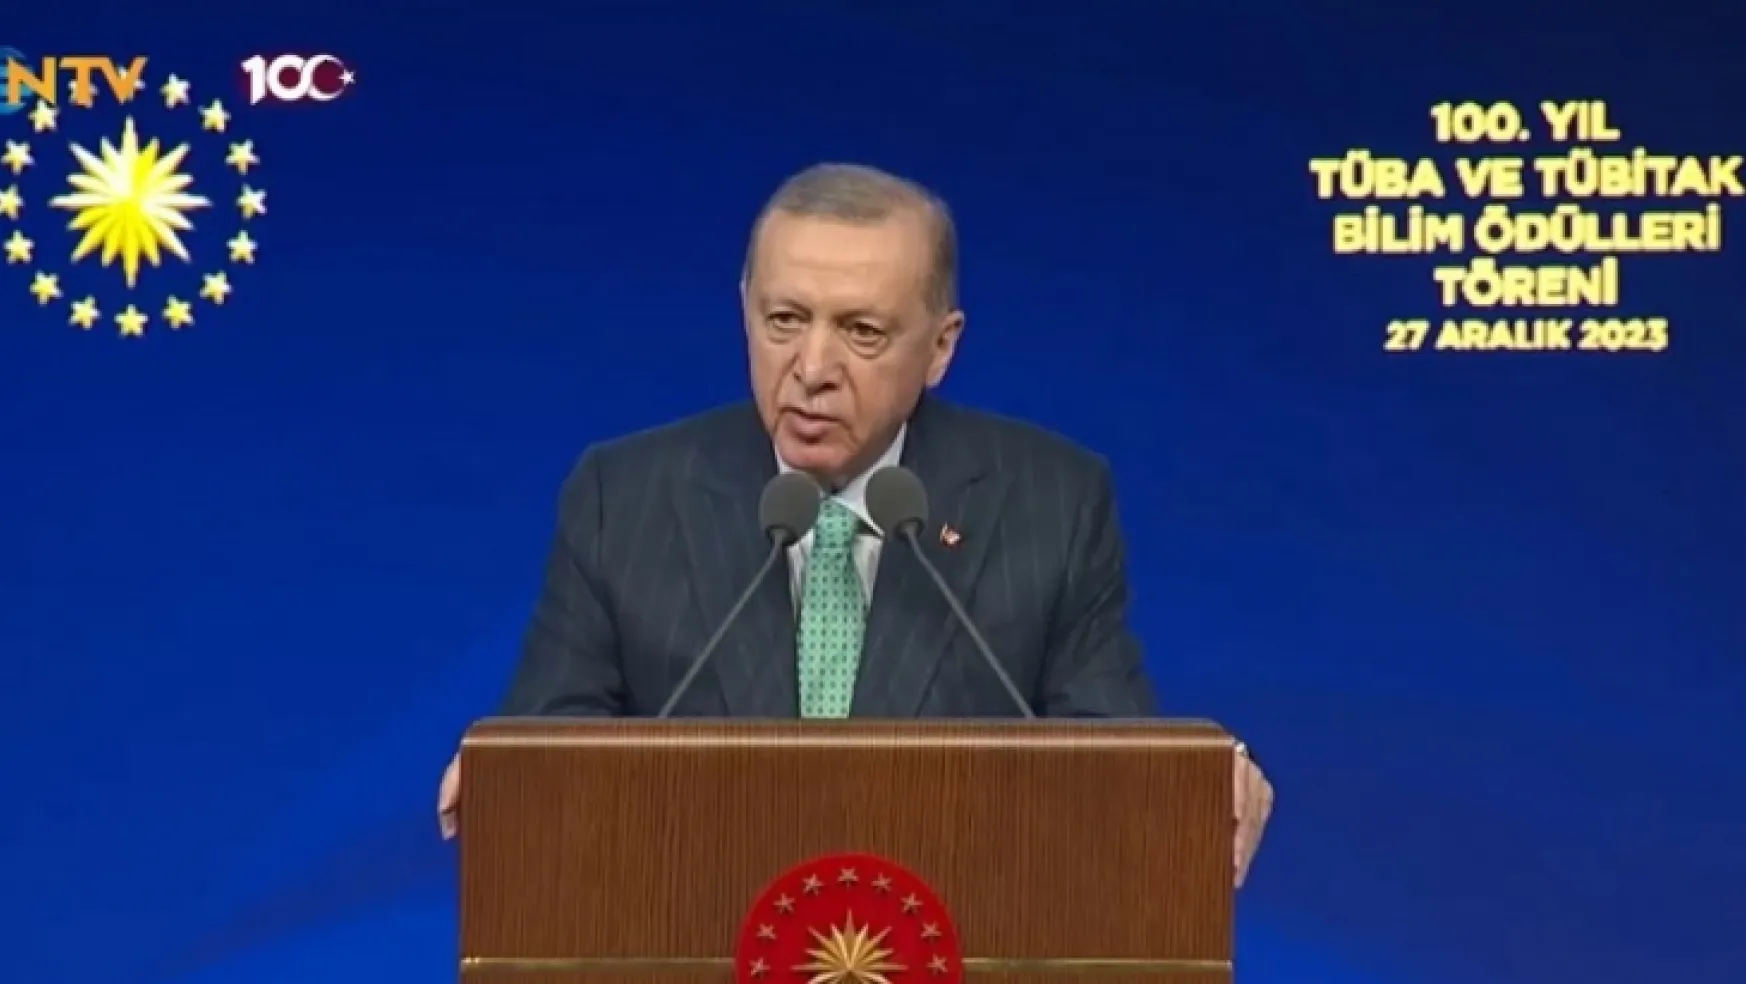 Erdoğan TÜBA ve TÜBİTAK Bilim Ödülleri töreninde konuştu: Netenyahu'nun Hitler'den farkı var mı?